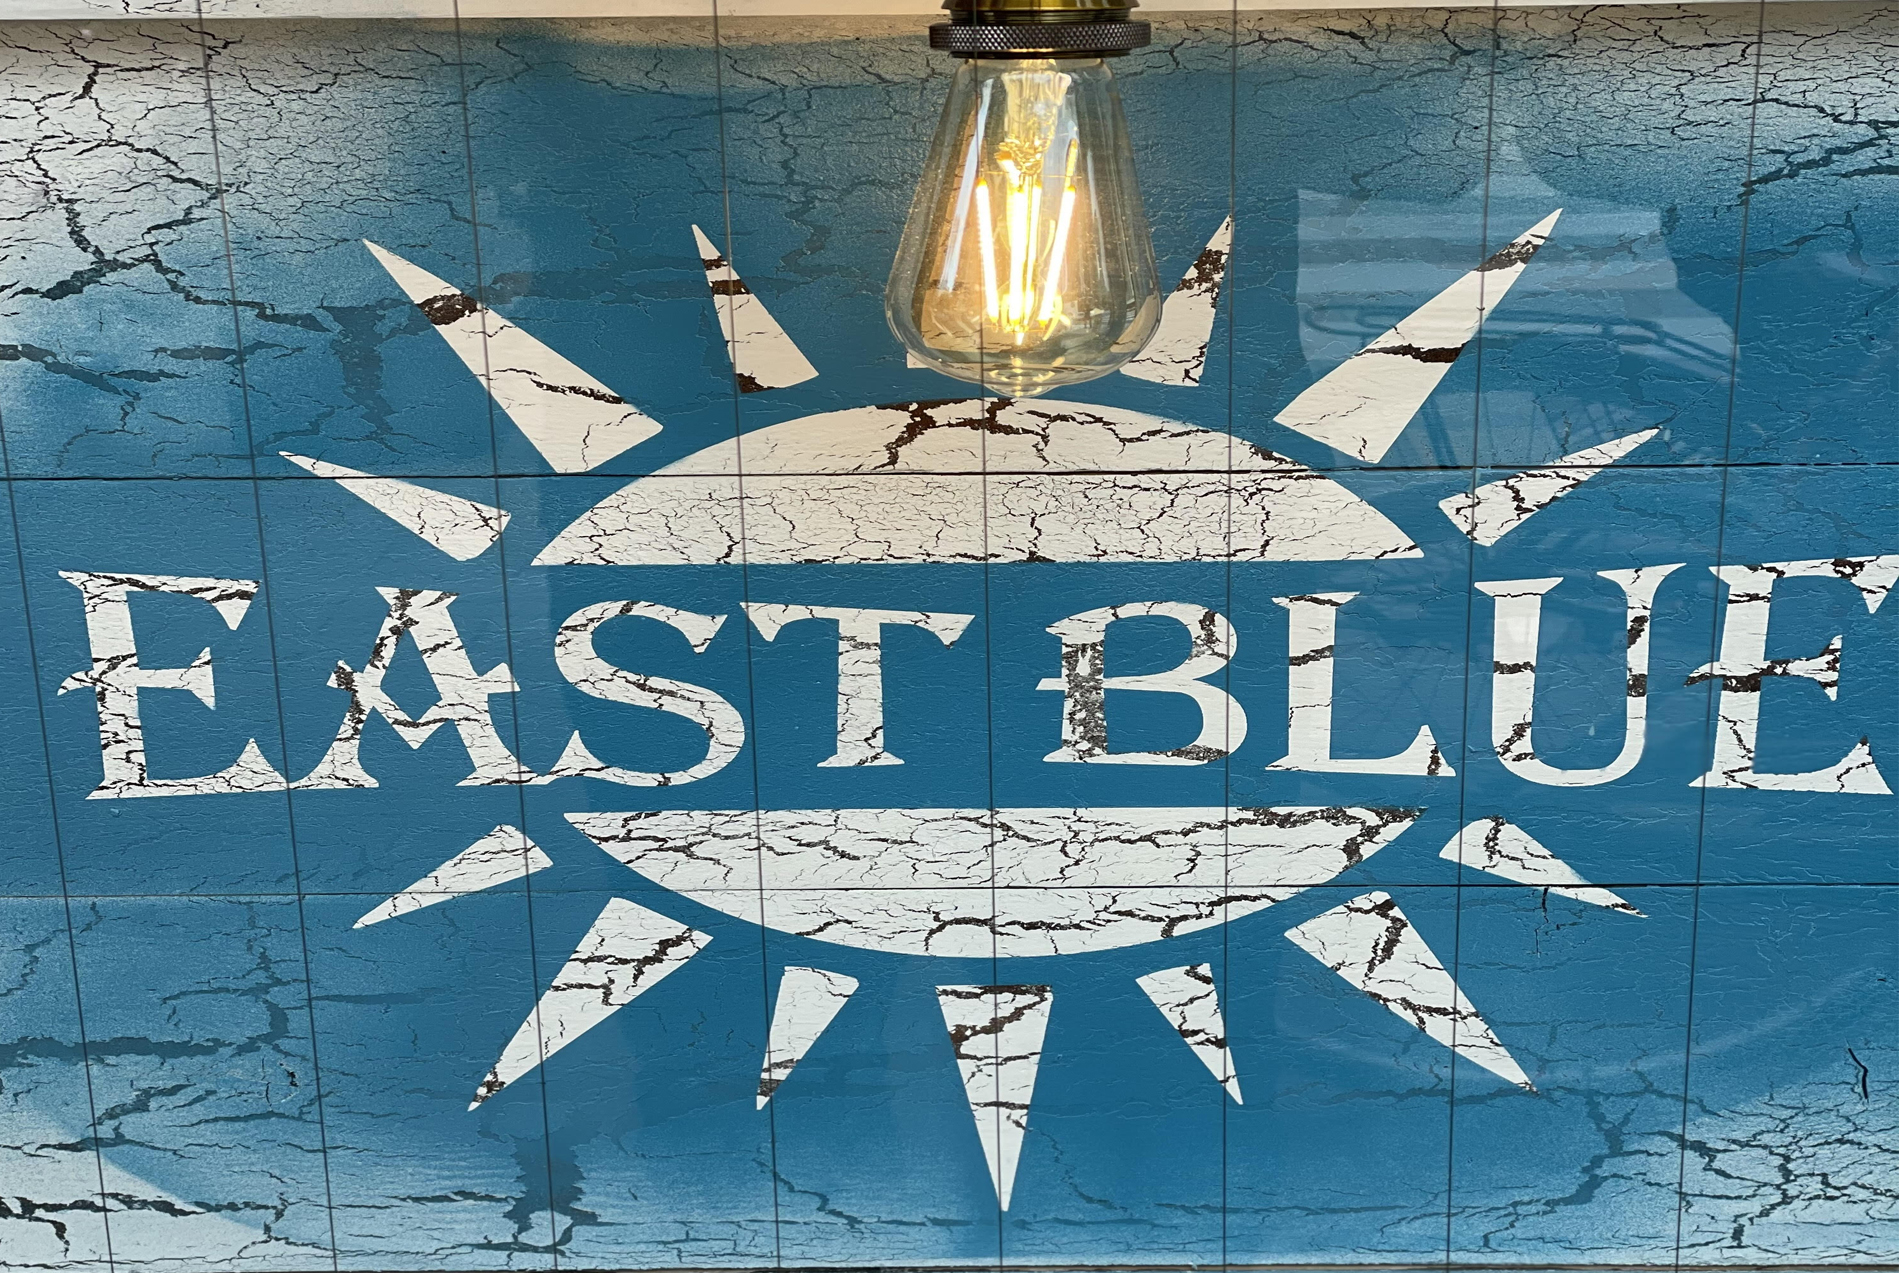 EAST BLUE